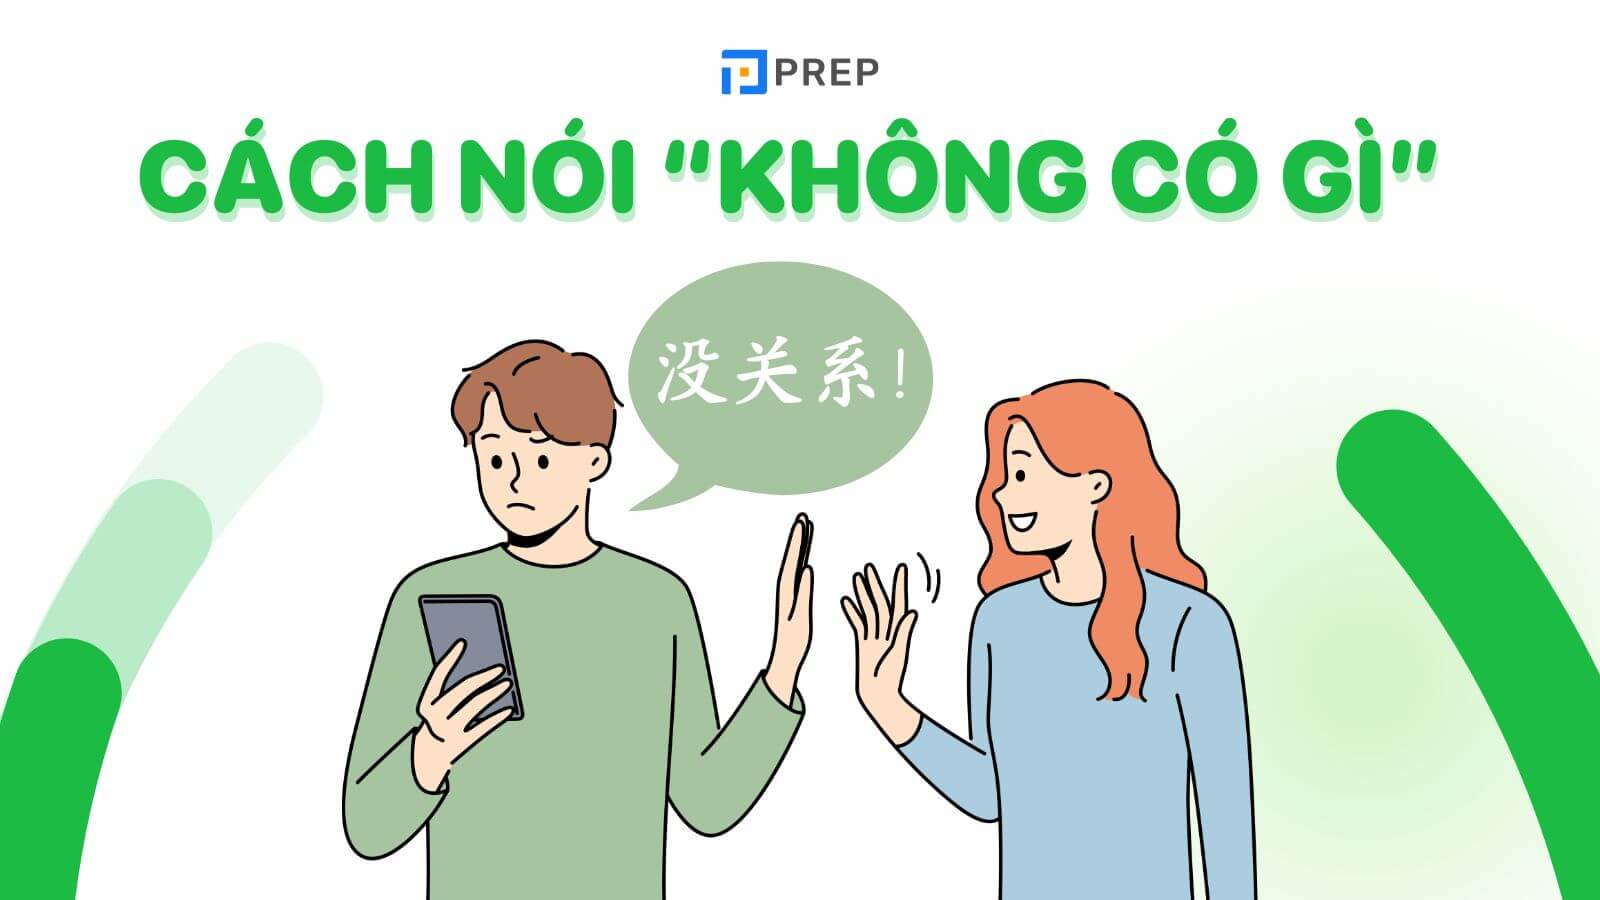 Không có gì dịch sang tiếng Trung: Hướng dẫn chi tiết và đầy đủ nhất